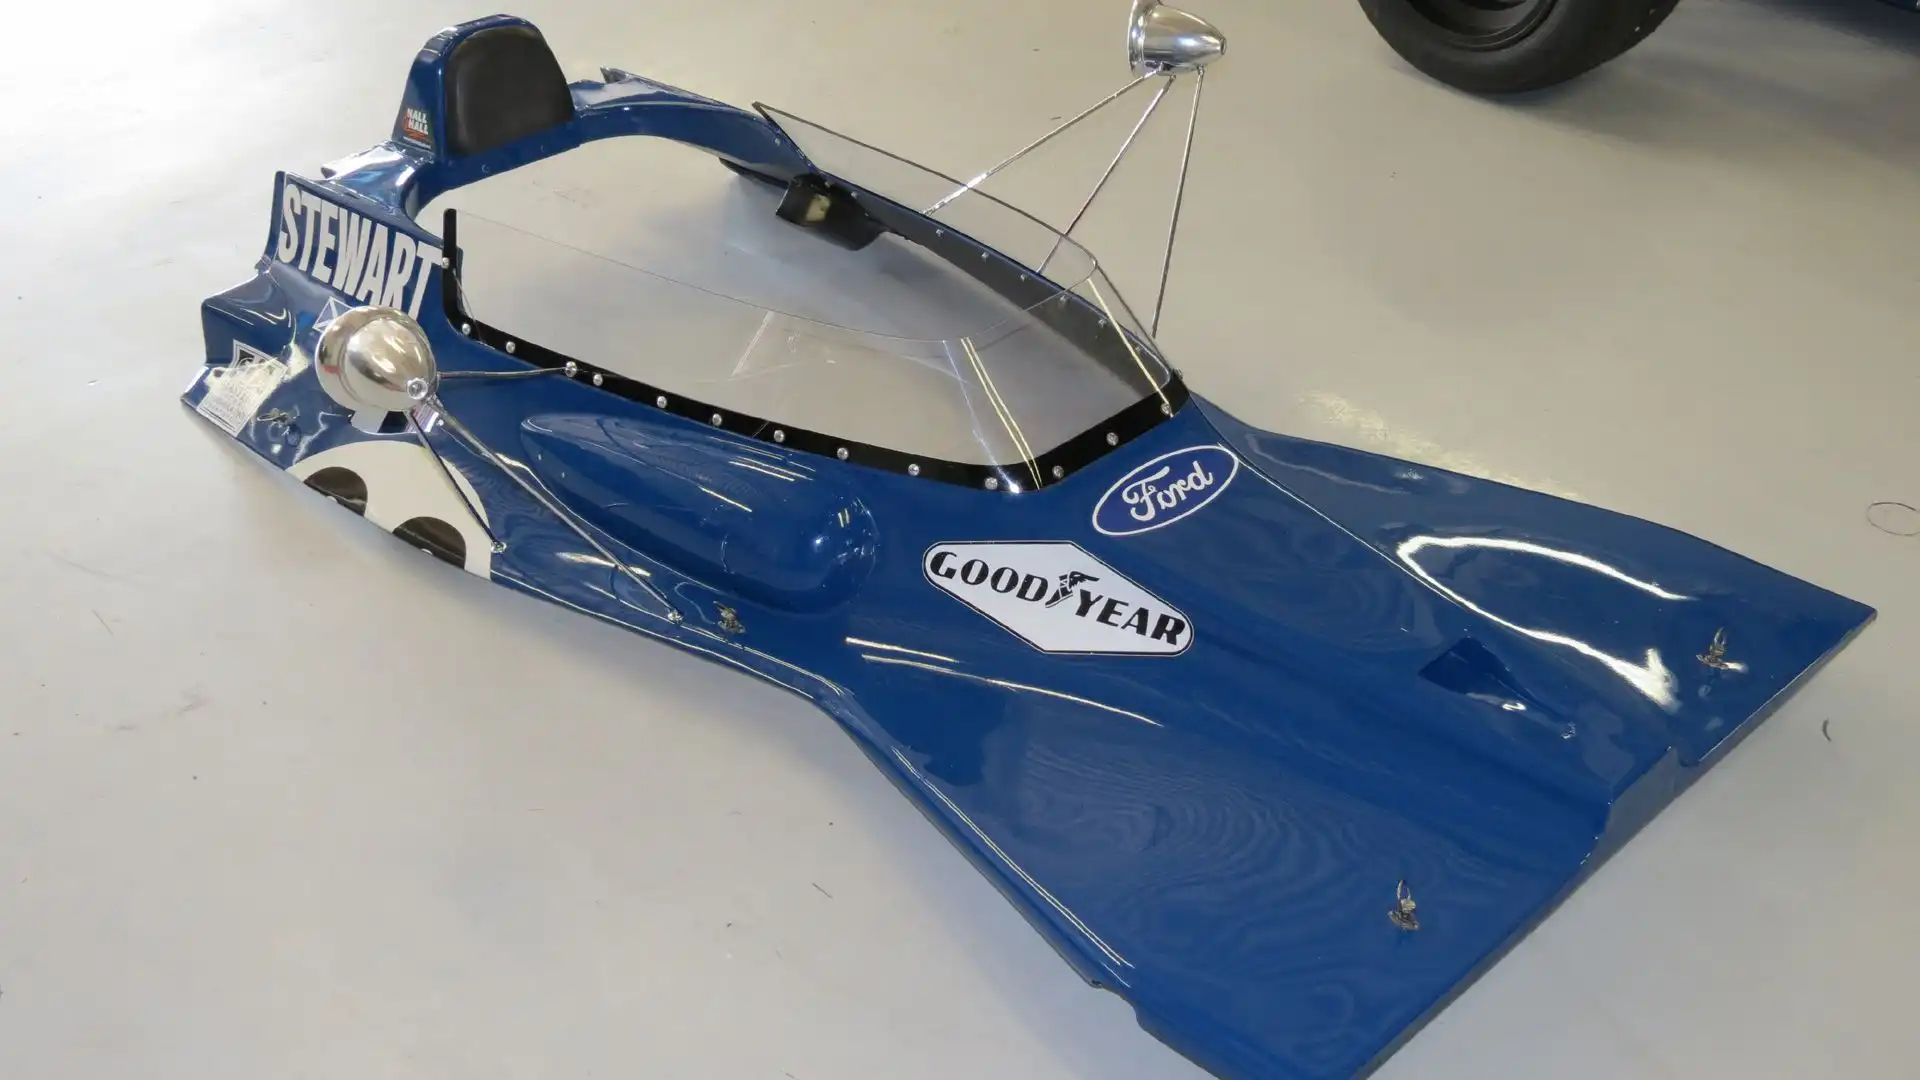 Rappresentò la base per lo sviluppo della Tyrrell 003, che avrebbe vinto il Mondiale del 1971